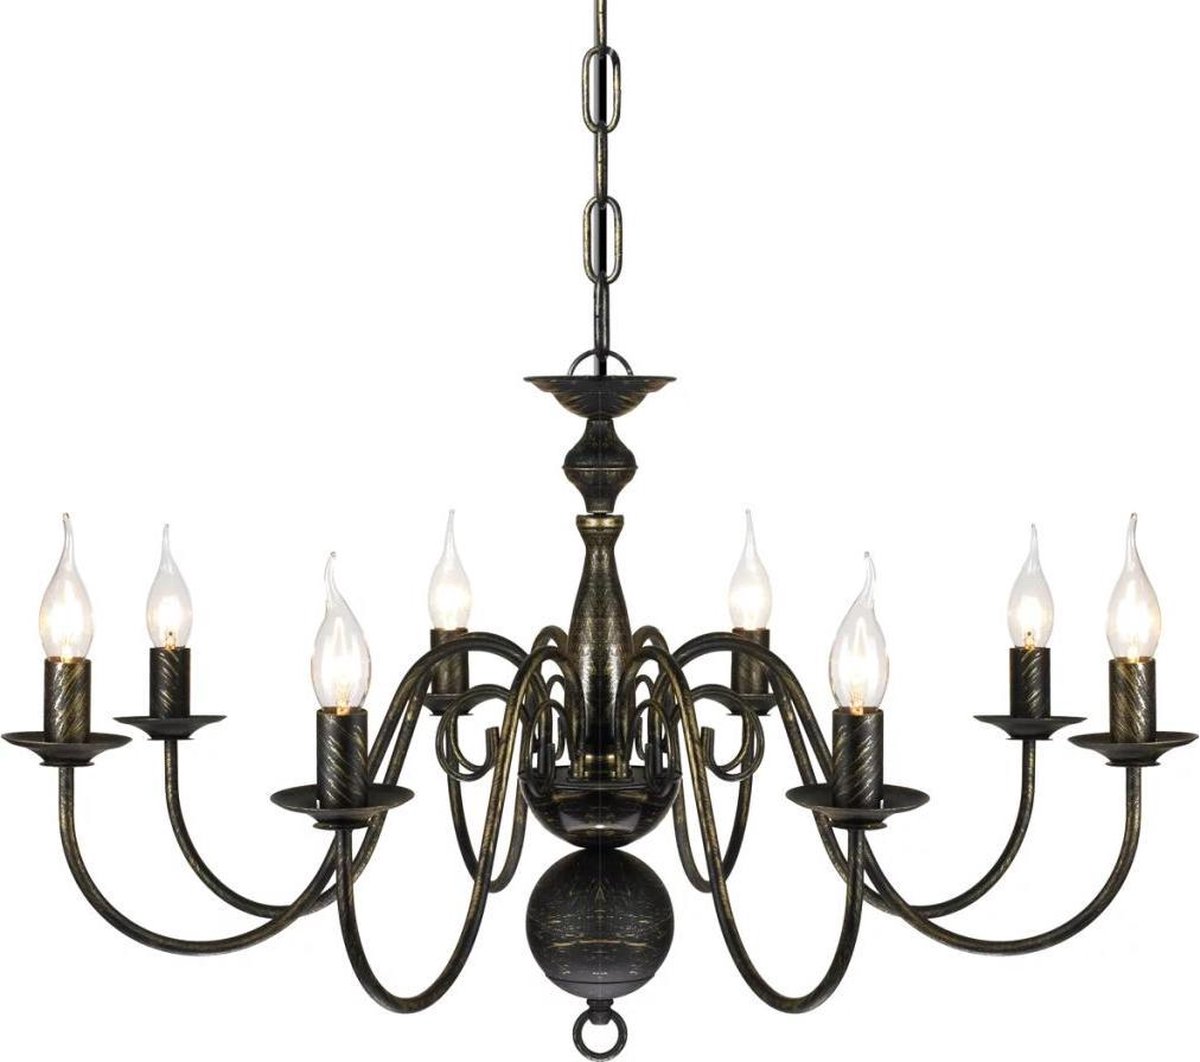 Hanglamp lamp kroonluchter zwart antiek metaal chandelier | bol.com